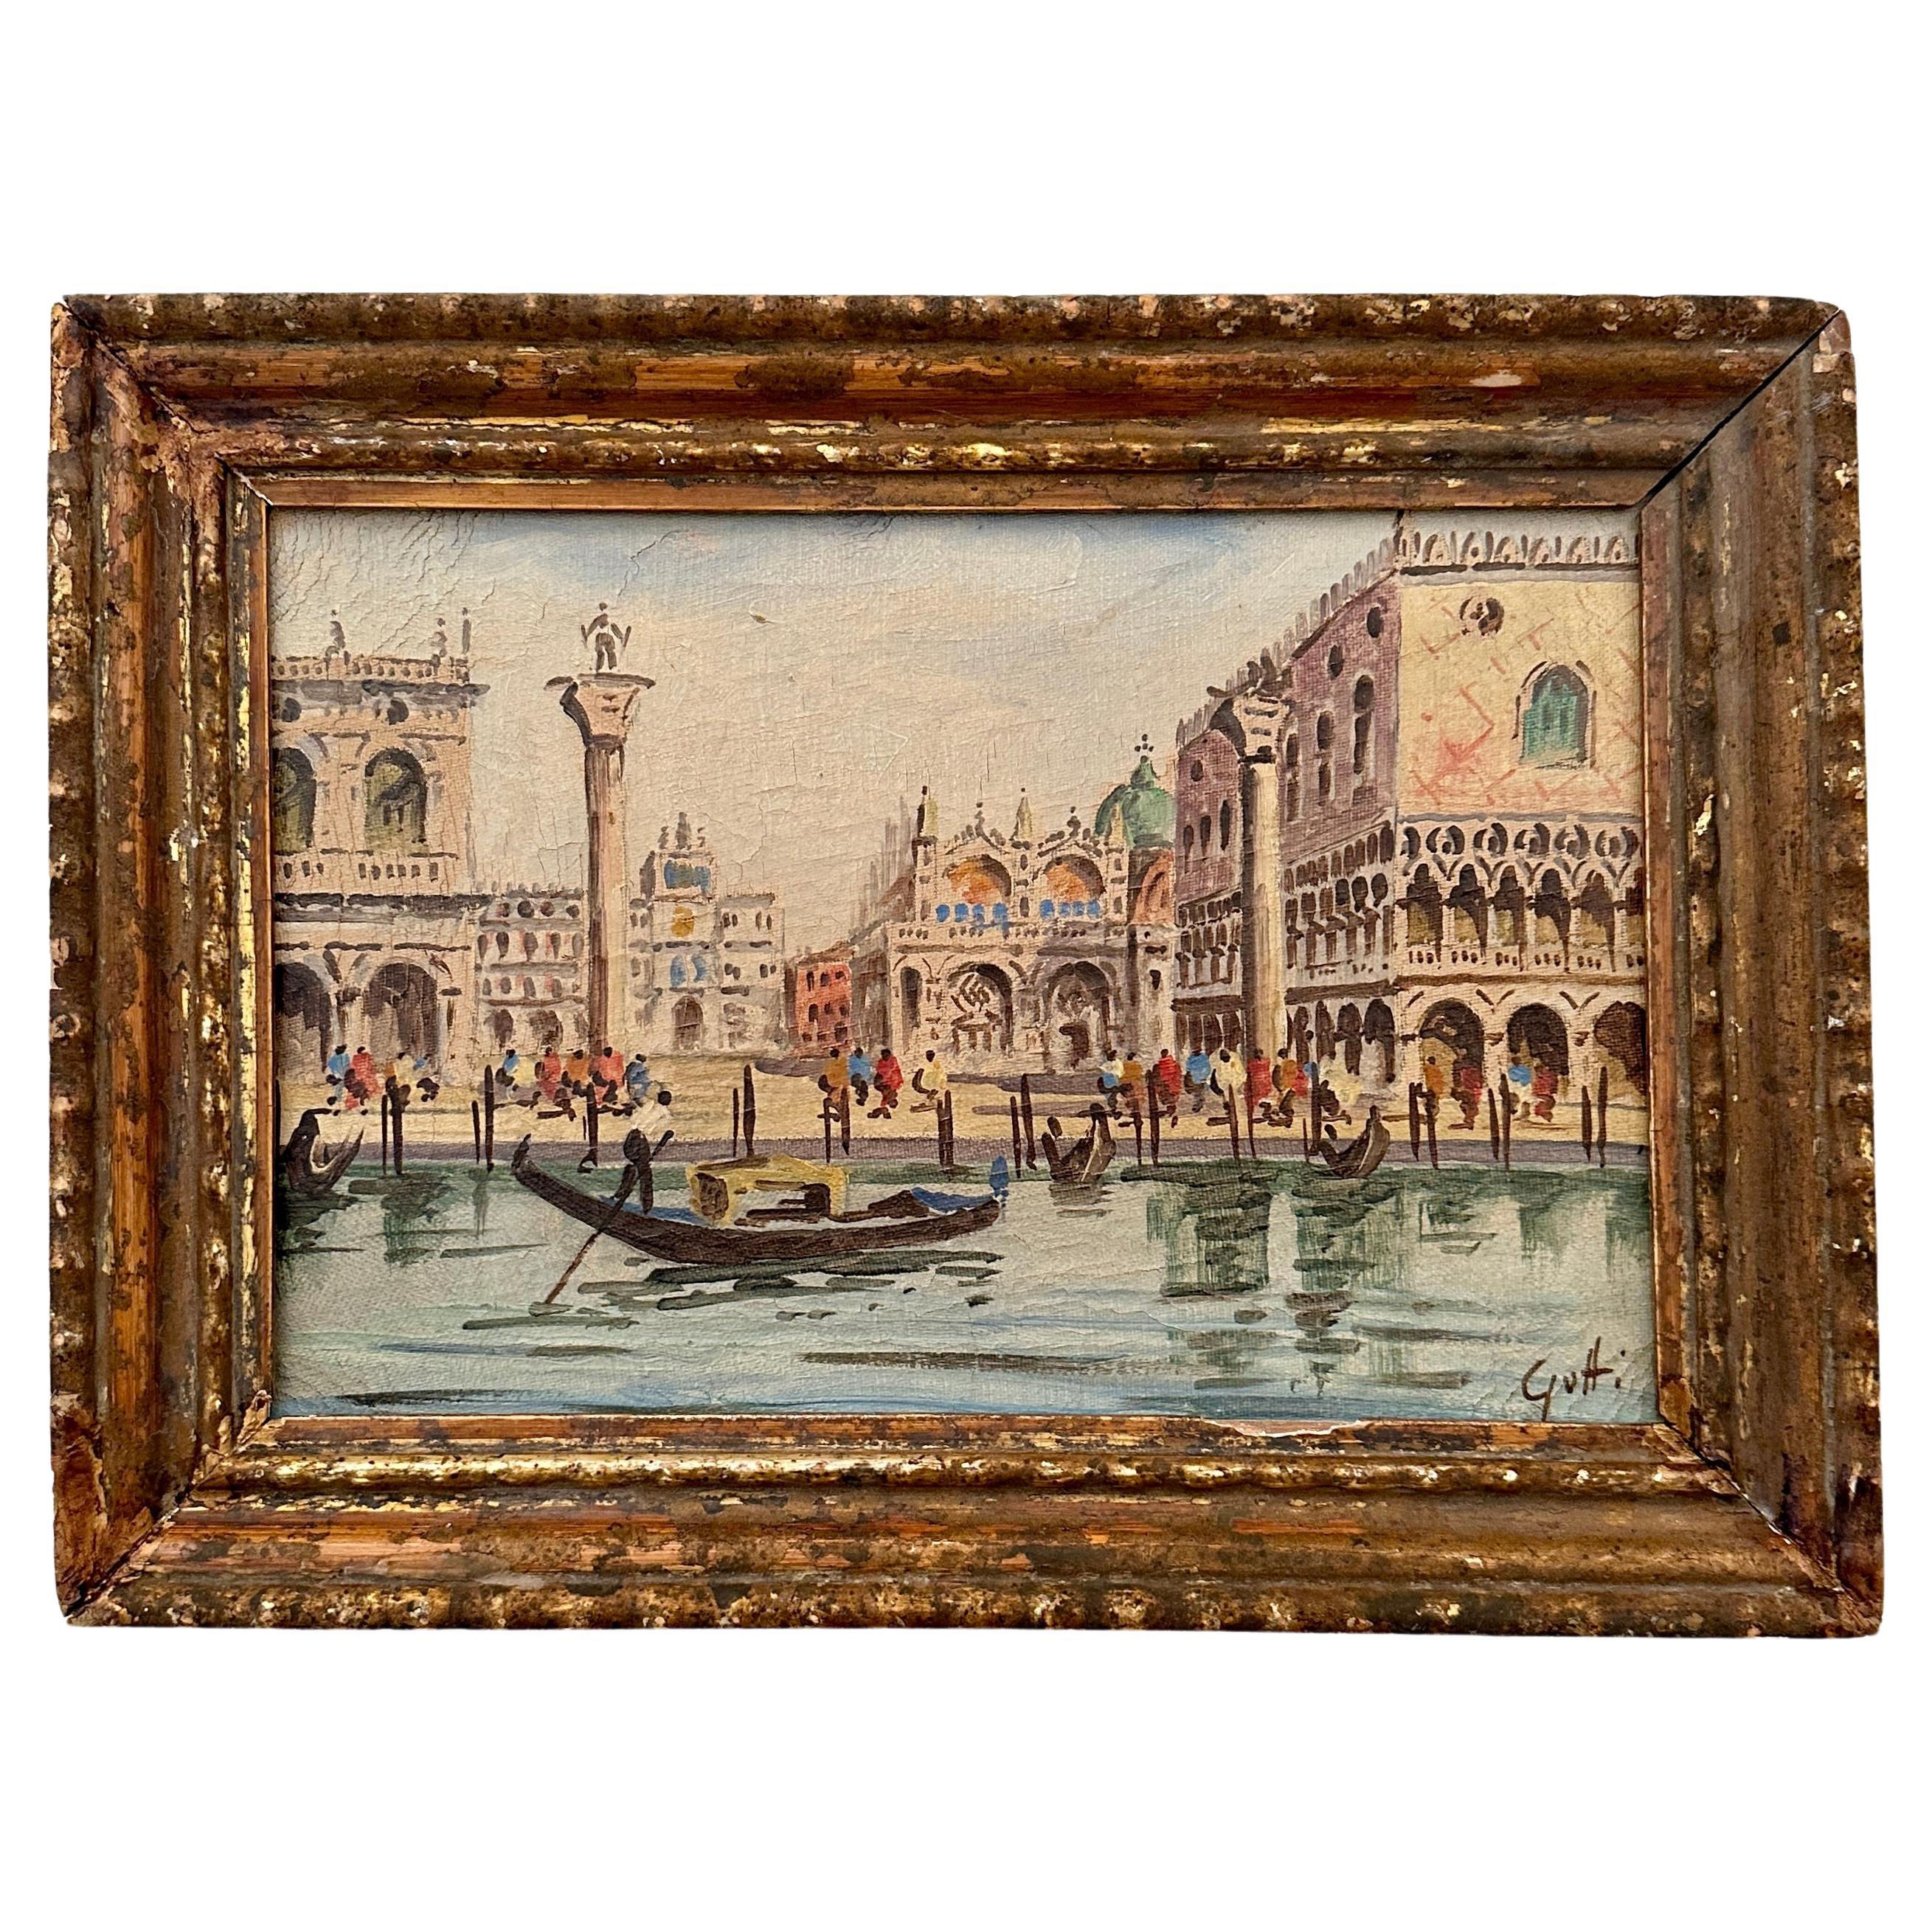 Ölgemälde von Venedig aus dem frühen 20. Jahrhundert in einem vergoldeten Rahmen aus dem 18. Jahrhundert, 1904